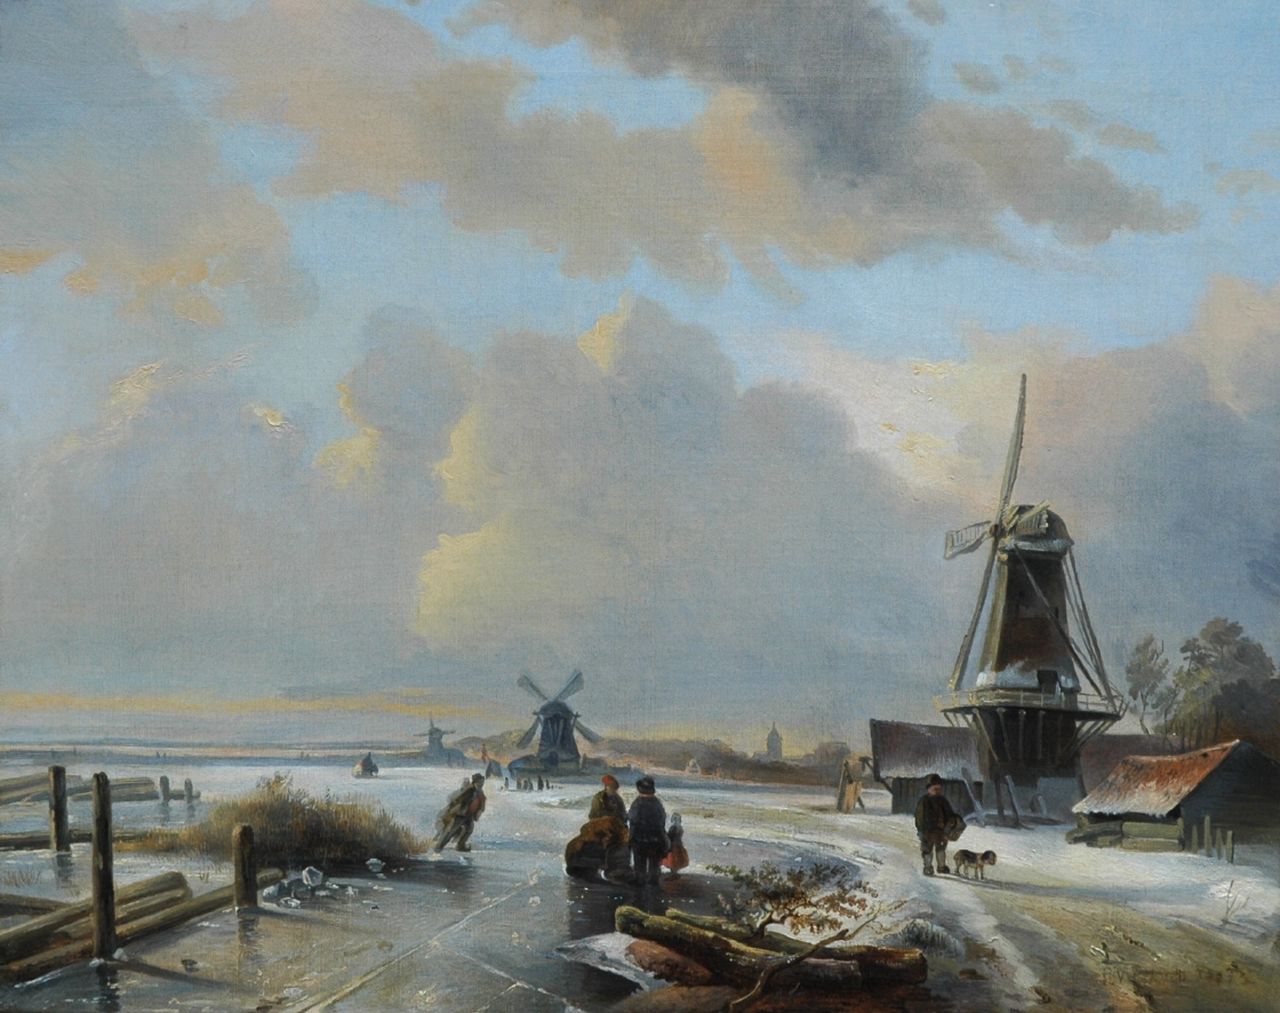 Voskuil P.  | Pieter Voskuil, Winterlandschap met schaatsers op een bevroren rivier, olieverf op doek 39,1 x 48,8 cm, gesigneerd rechtsonder en gedateerd 1837